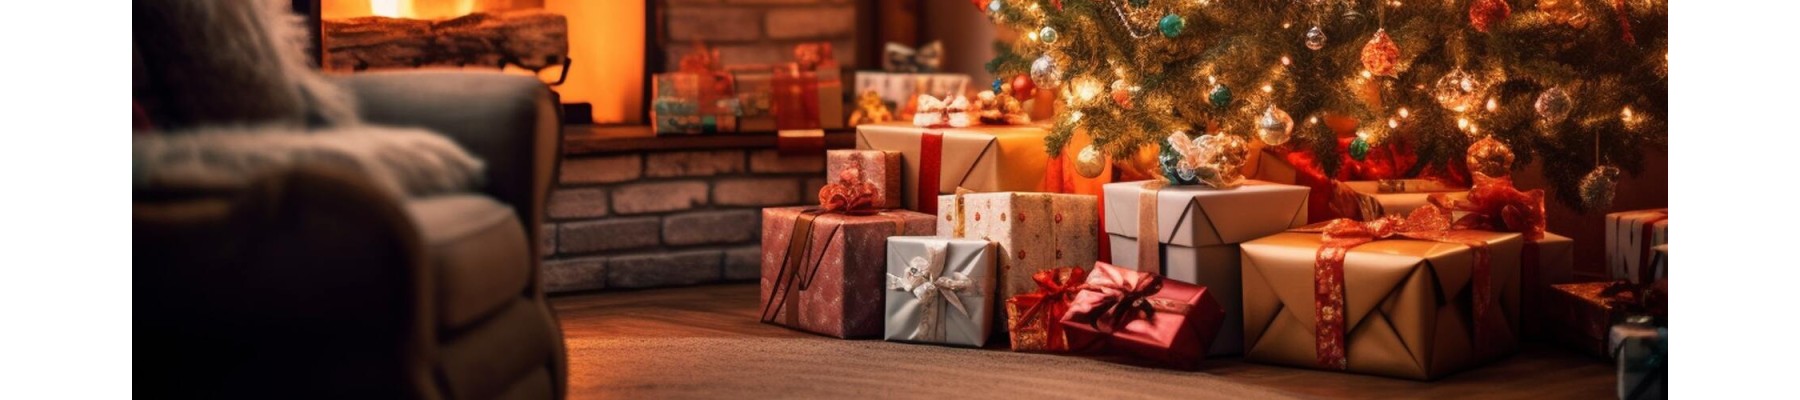 Нужен поставщик новогодних подарков?